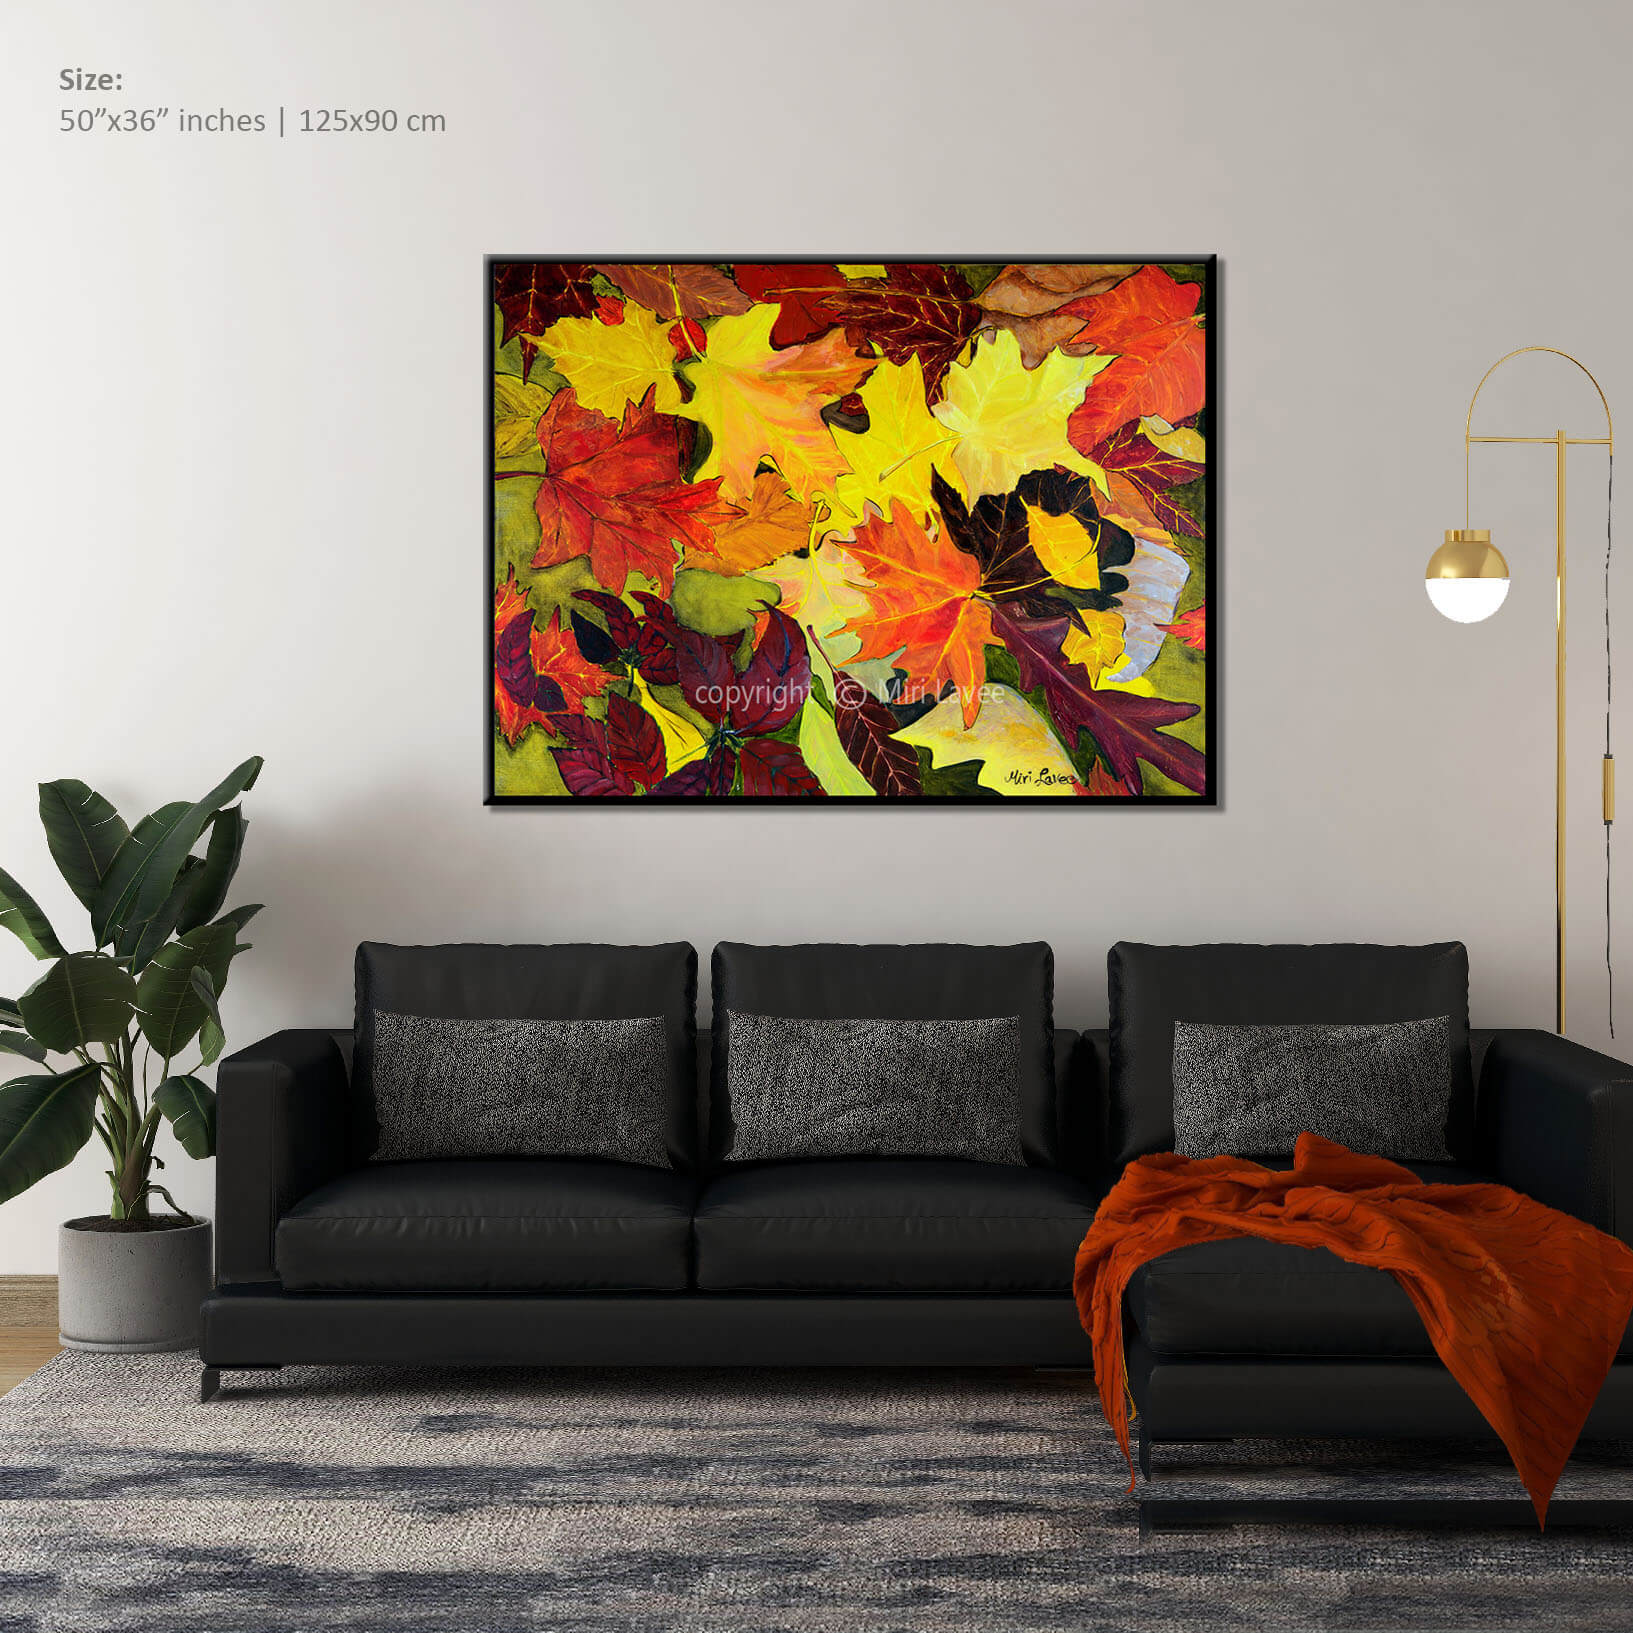 ציור אוריגינלי צבעוני מלא שמחה של עלים בסתיו מעל ספה בסלון